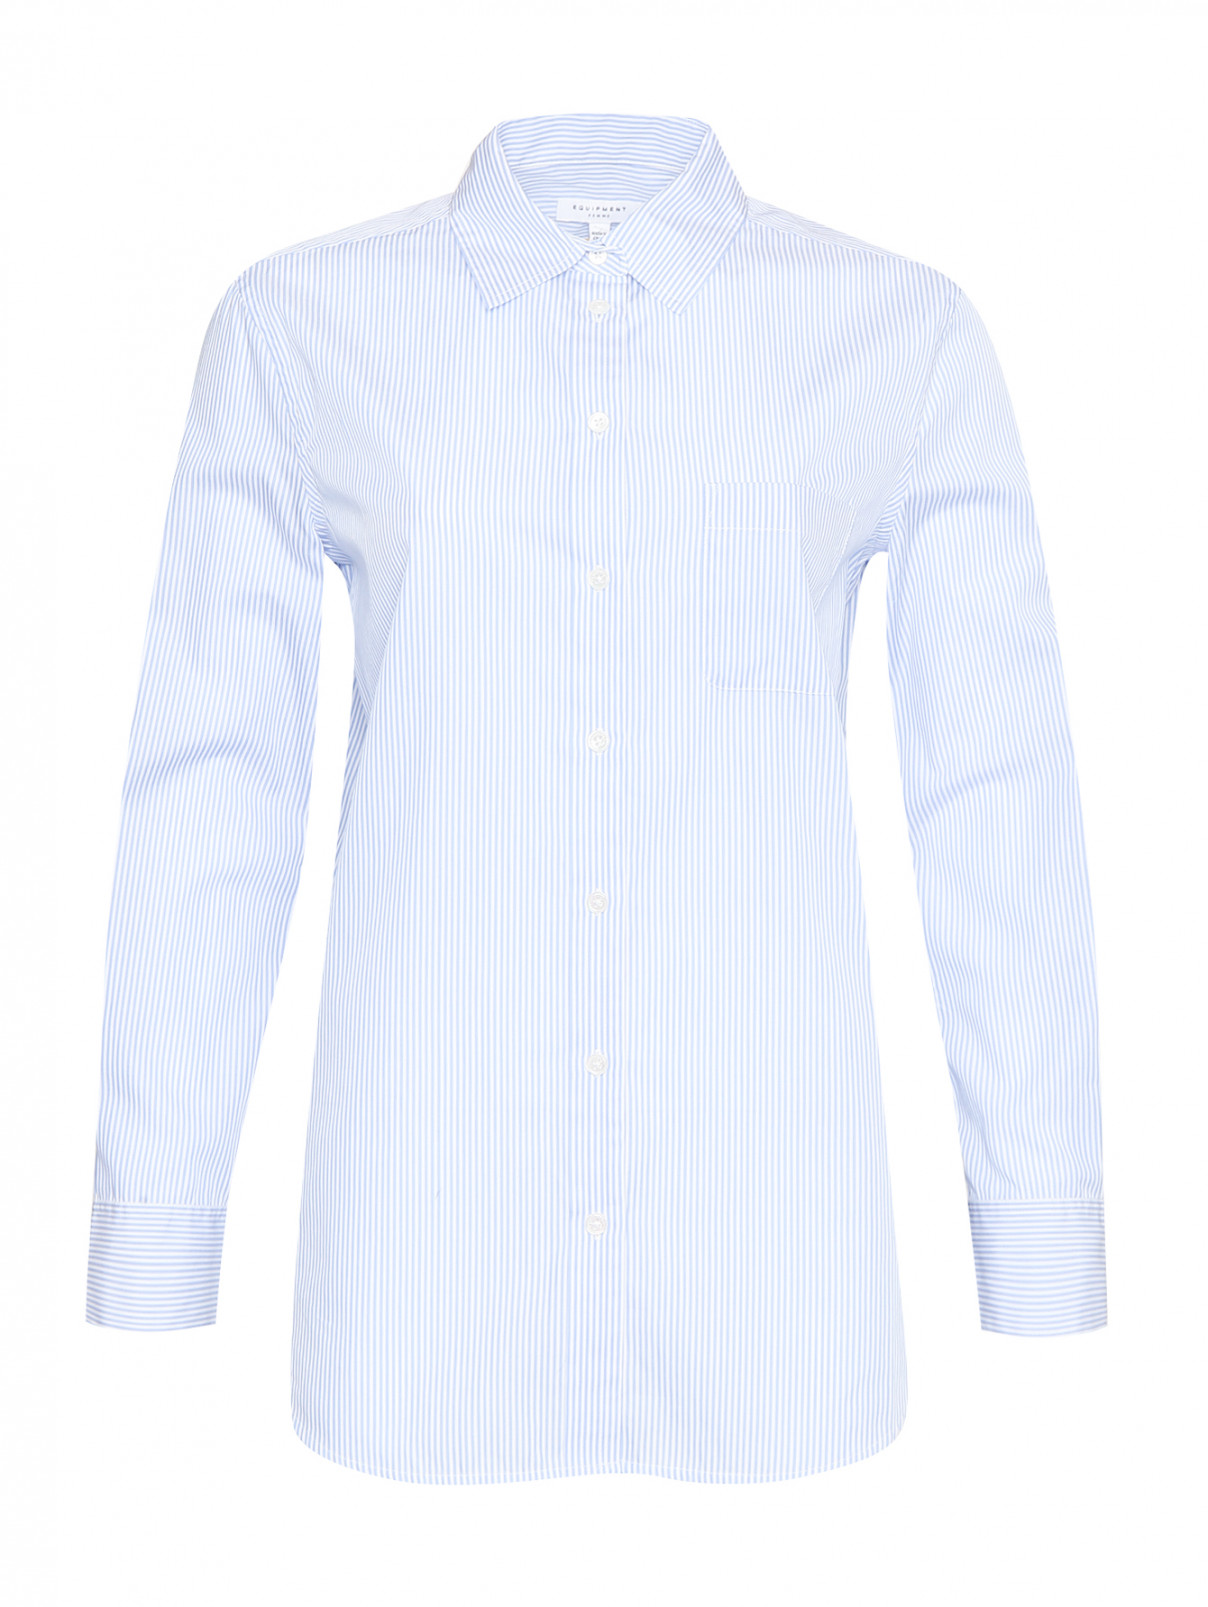 Рубашка из хлопка с узором полоска Equipment  –  Общий вид  – Цвет:  Синий